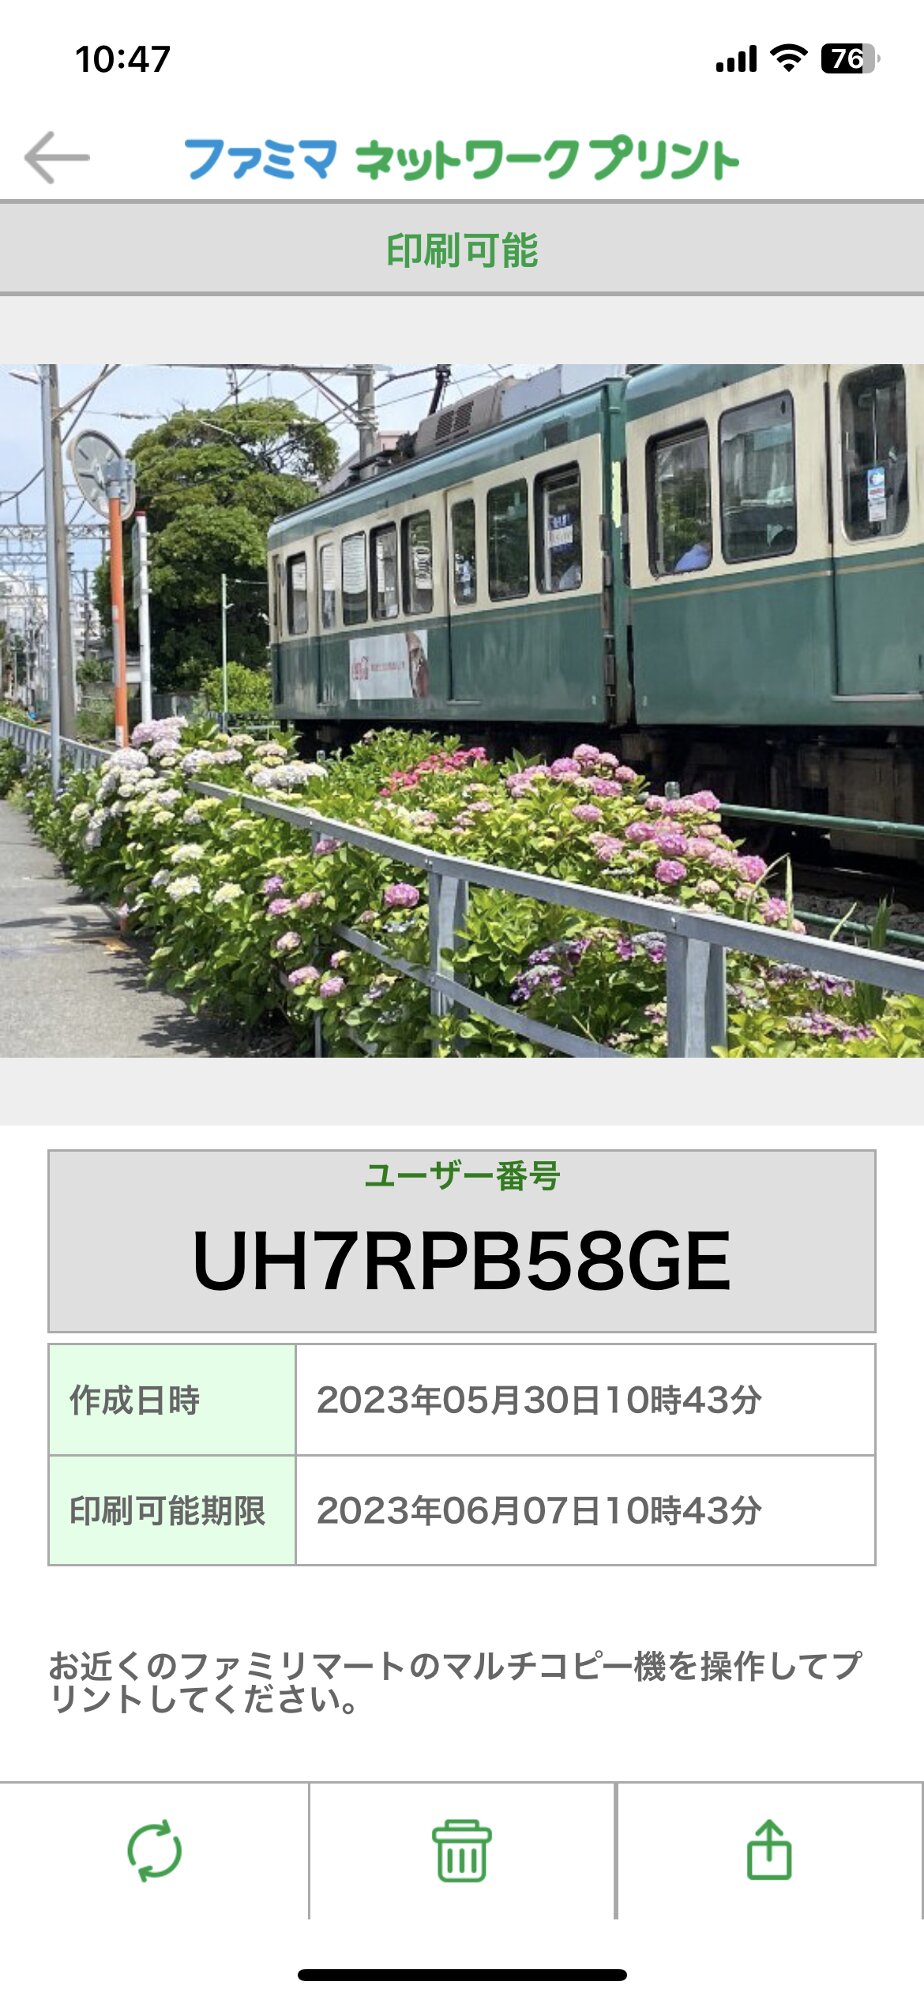 写真が登録され、「ユーザー番号」が発行された画面